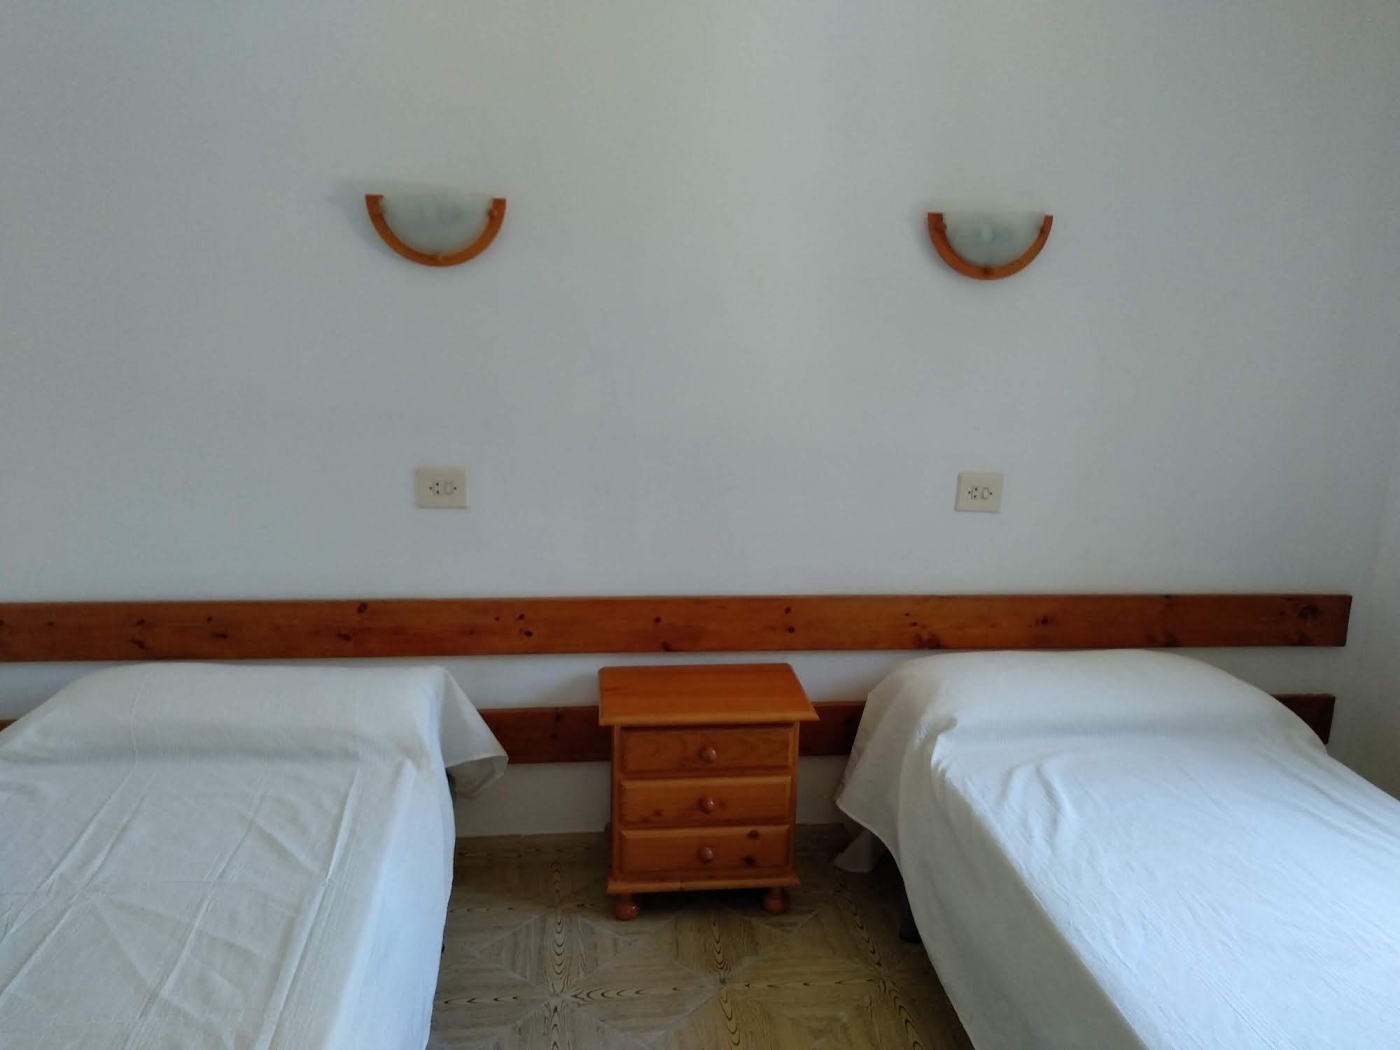 Apartament · Sa Riera · 2 dormitoris · 4 llits · 1 bany a Begur